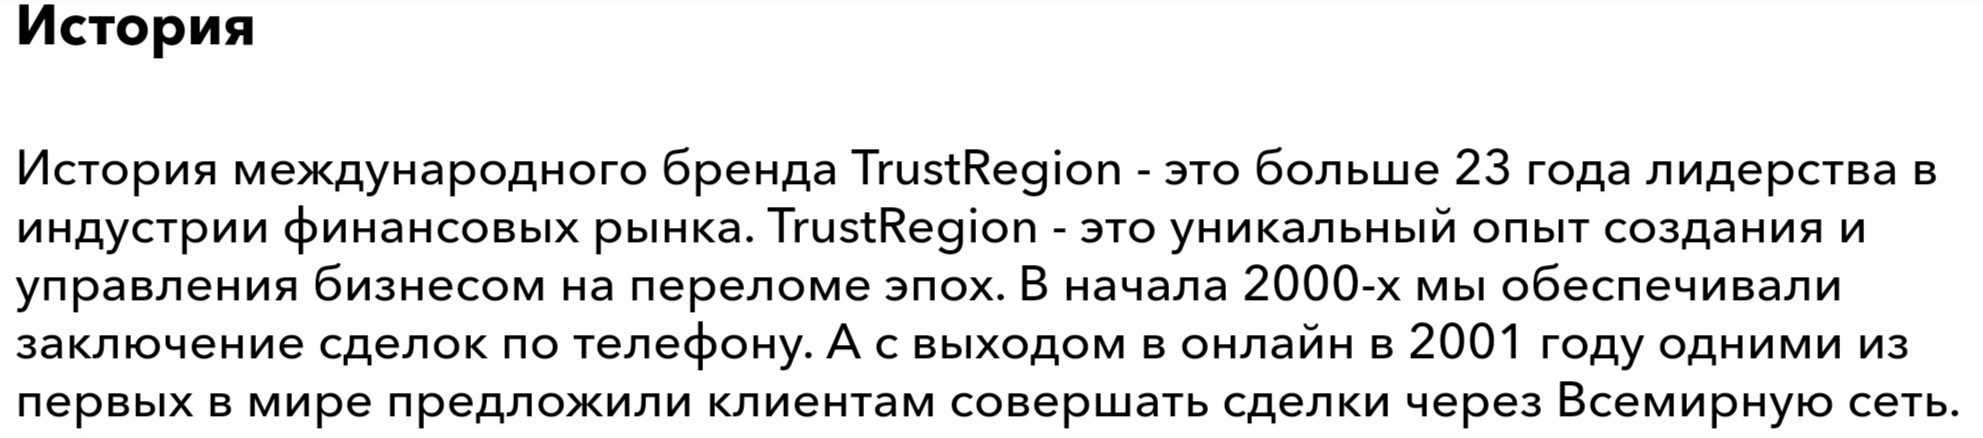 История компании Trust Region Method